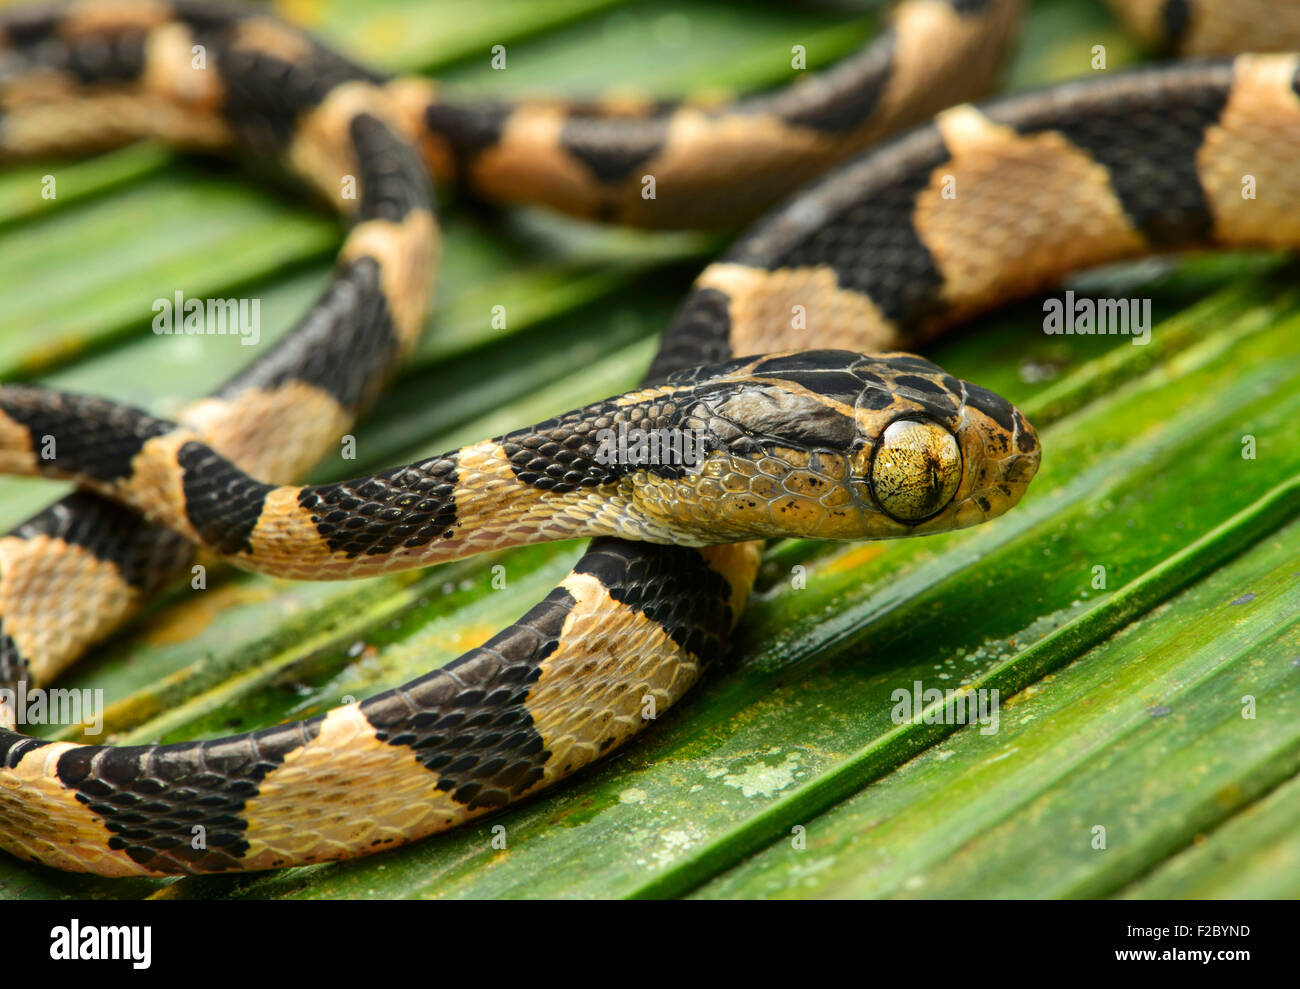 Arbre généalogique Blunthead Imantodes cenchoa (serpent), les jeunes, des animaux de la famille colubridae (Colubridae), Chocó rainforest, Équateur Banque D'Images